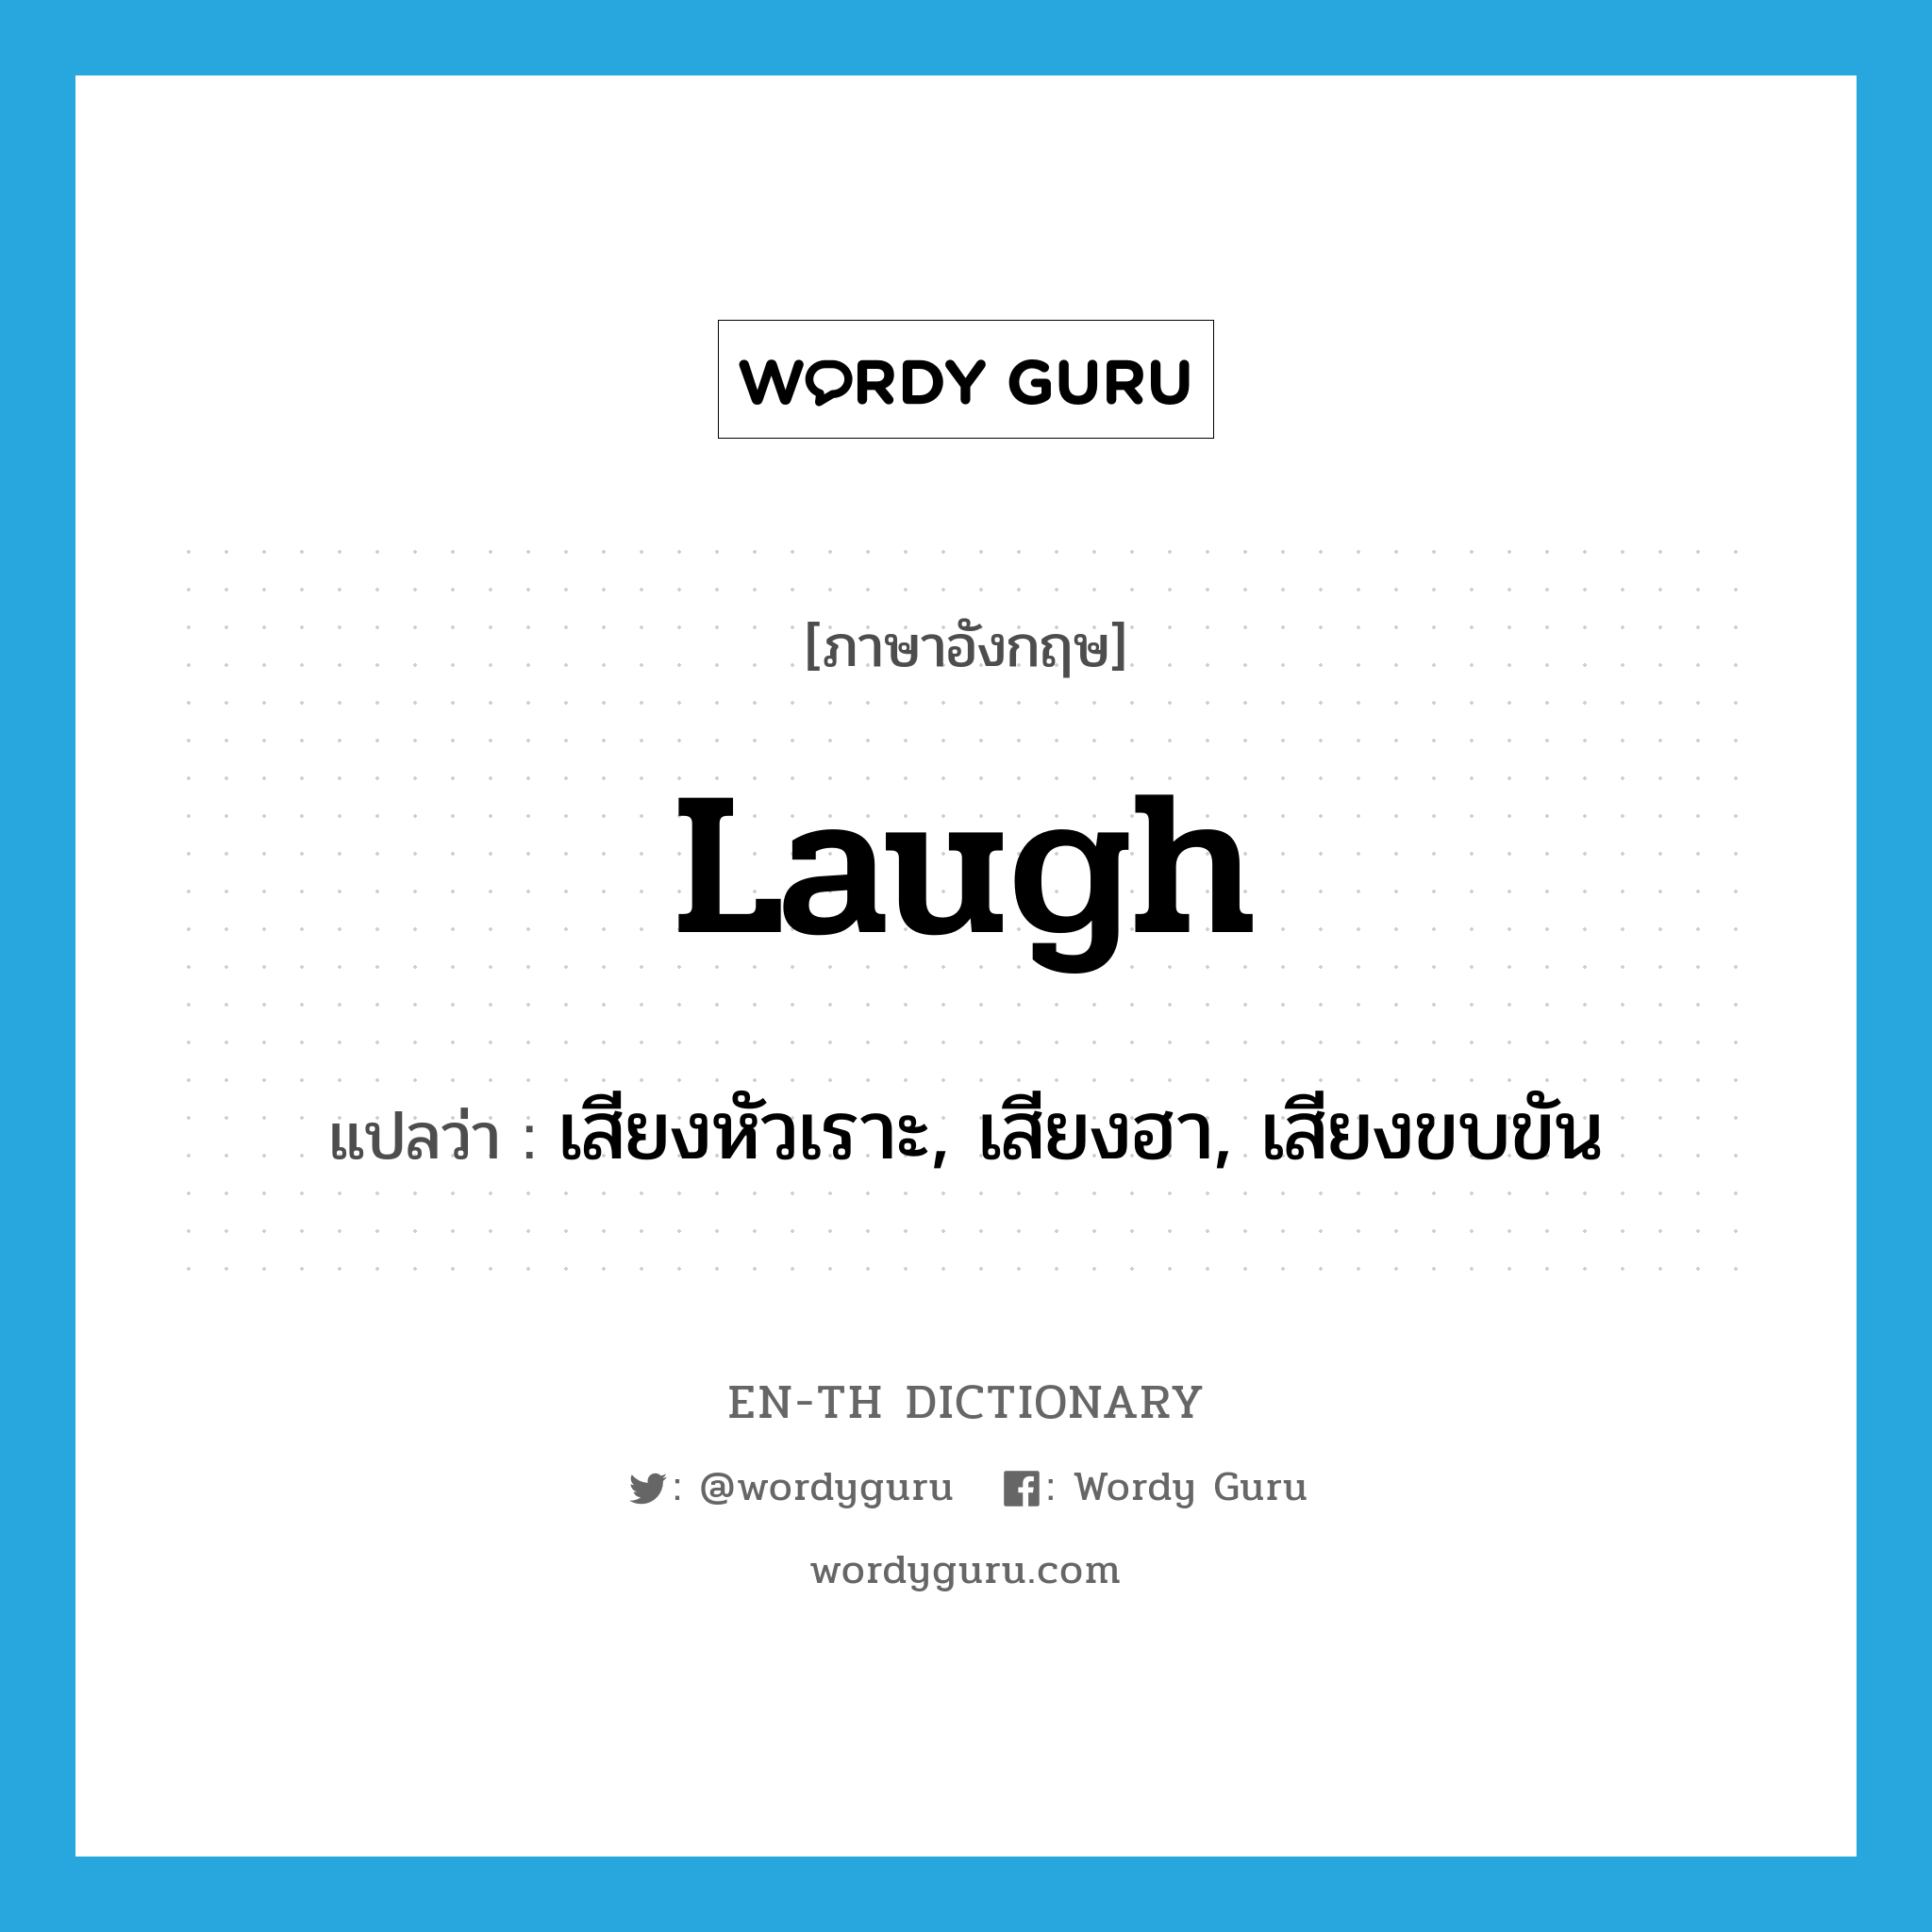 เสียงหัวเราะ, เสียงฮา, เสียงขบขัน ภาษาอังกฤษ?, คำศัพท์ภาษาอังกฤษ เสียงหัวเราะ, เสียงฮา, เสียงขบขัน แปลว่า laugh ประเภท N หมวด N